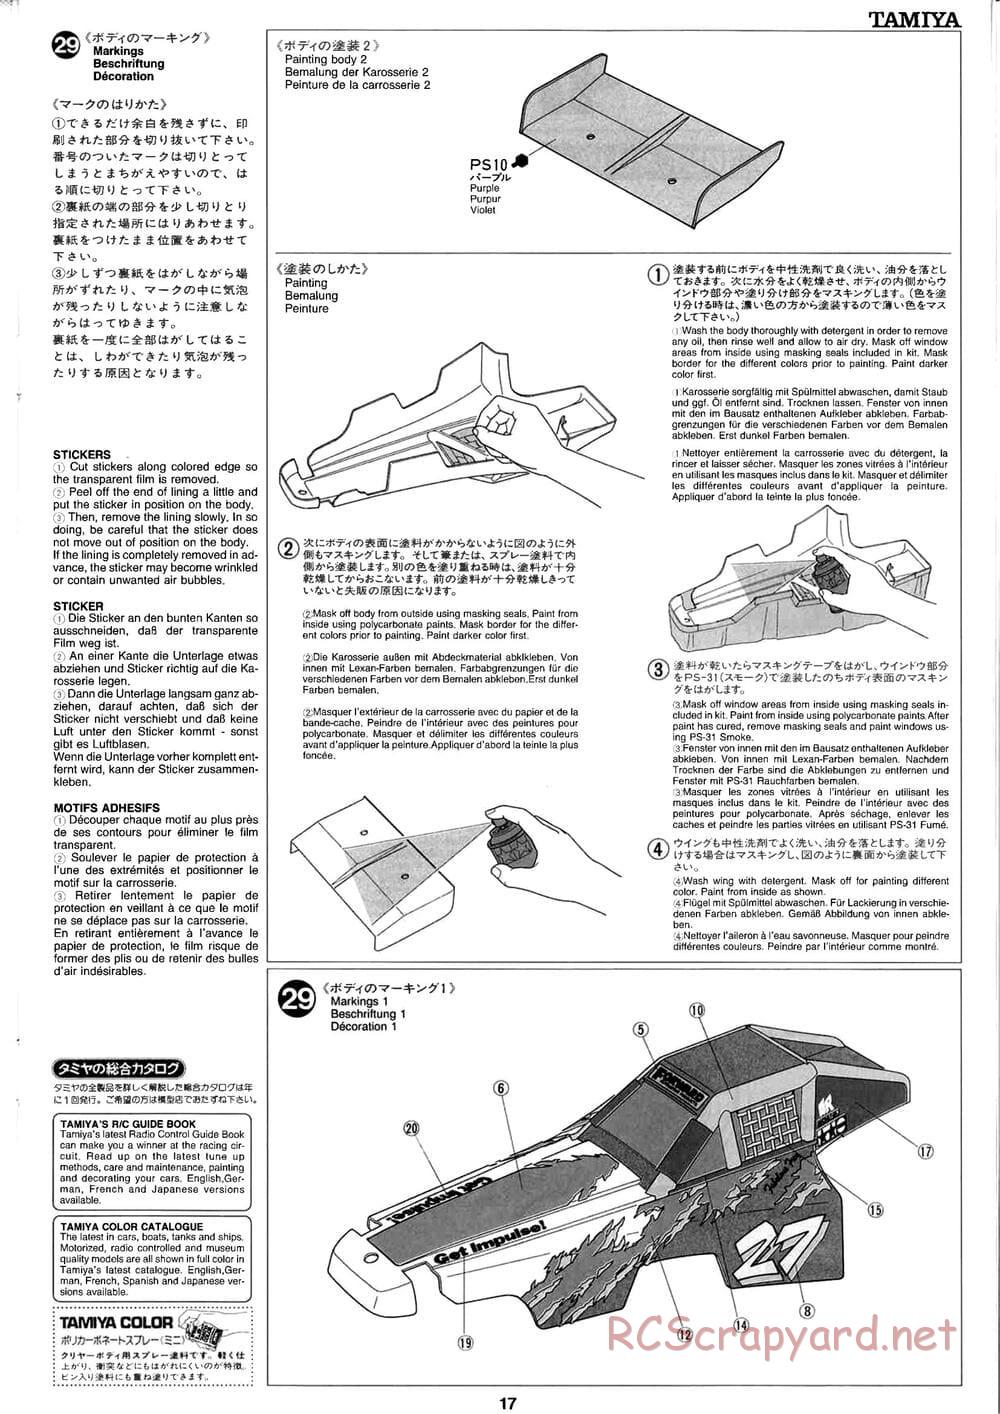 Tamiya - Baja Champ - TL-01B Chassis - Manual - Page 17